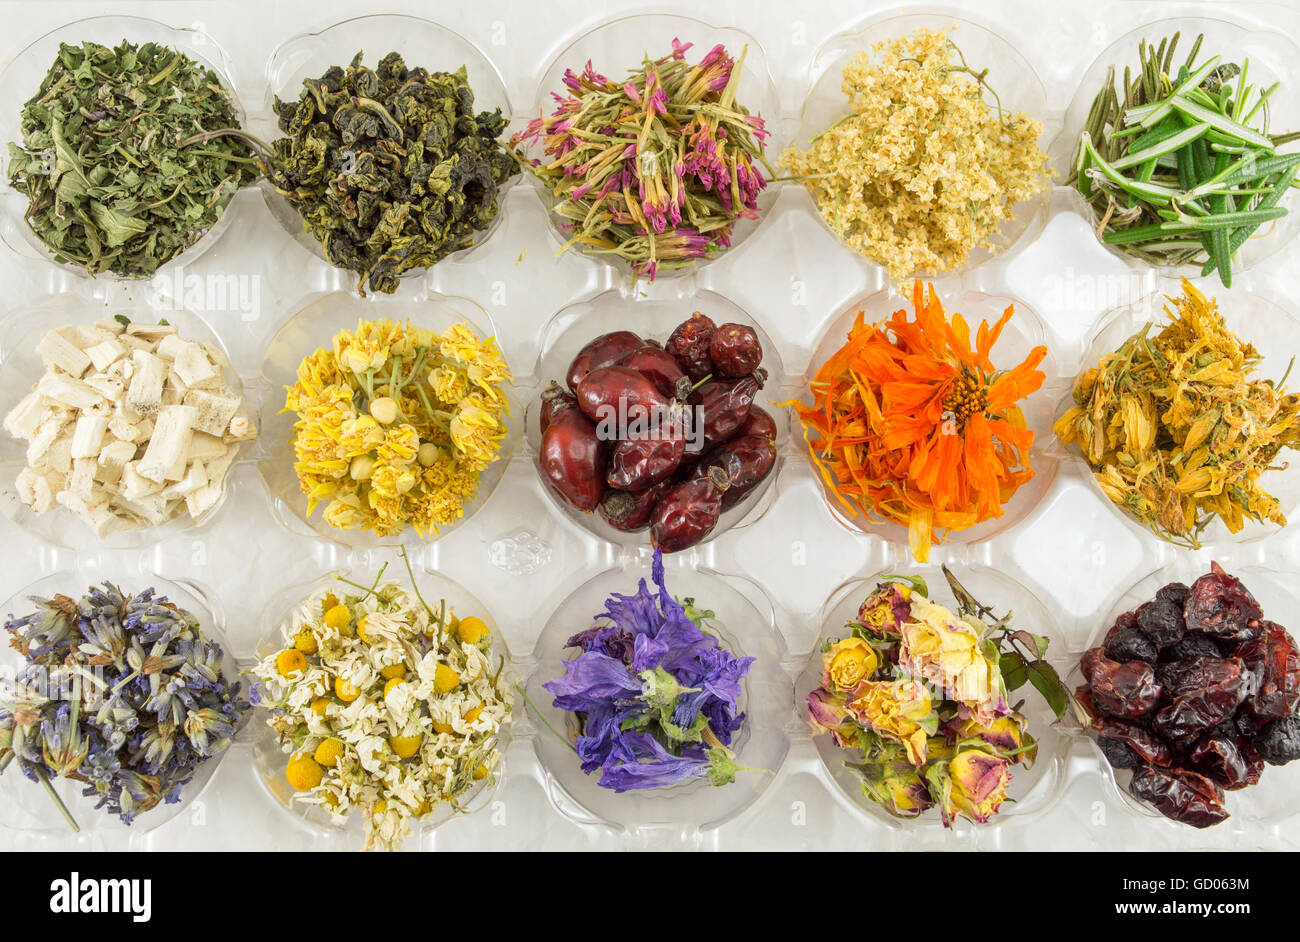 Diverses plantes séchées pour faire un thé parfait Banque D'Images